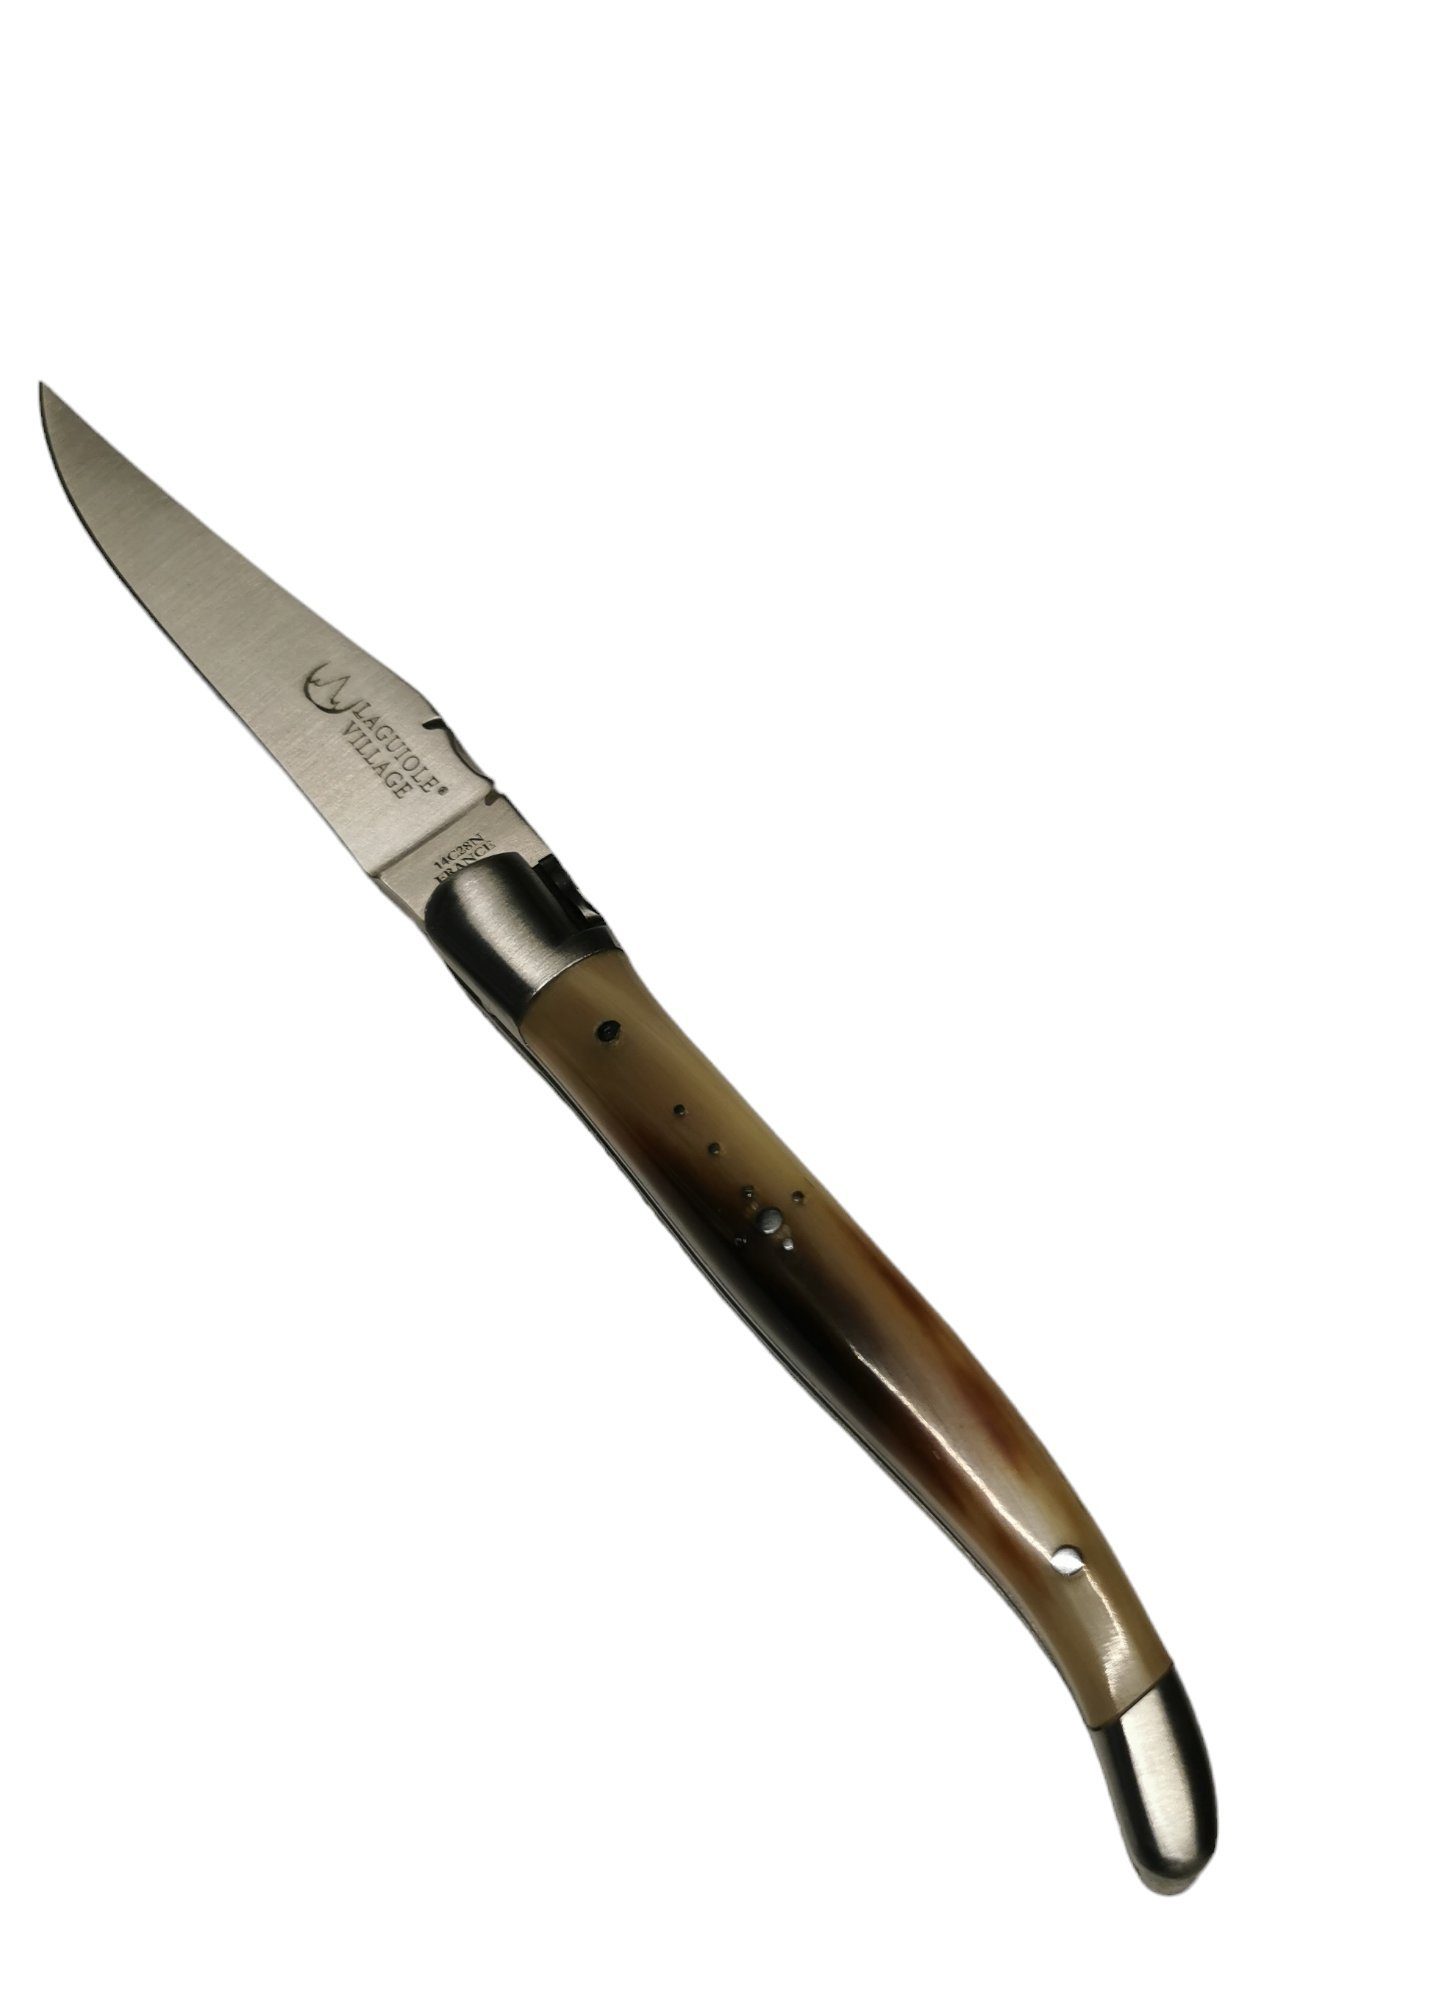 Frankreich mit Horn Taschenmesser in Laguiole Taschenmesser Laguiole Griff 10 cm Village